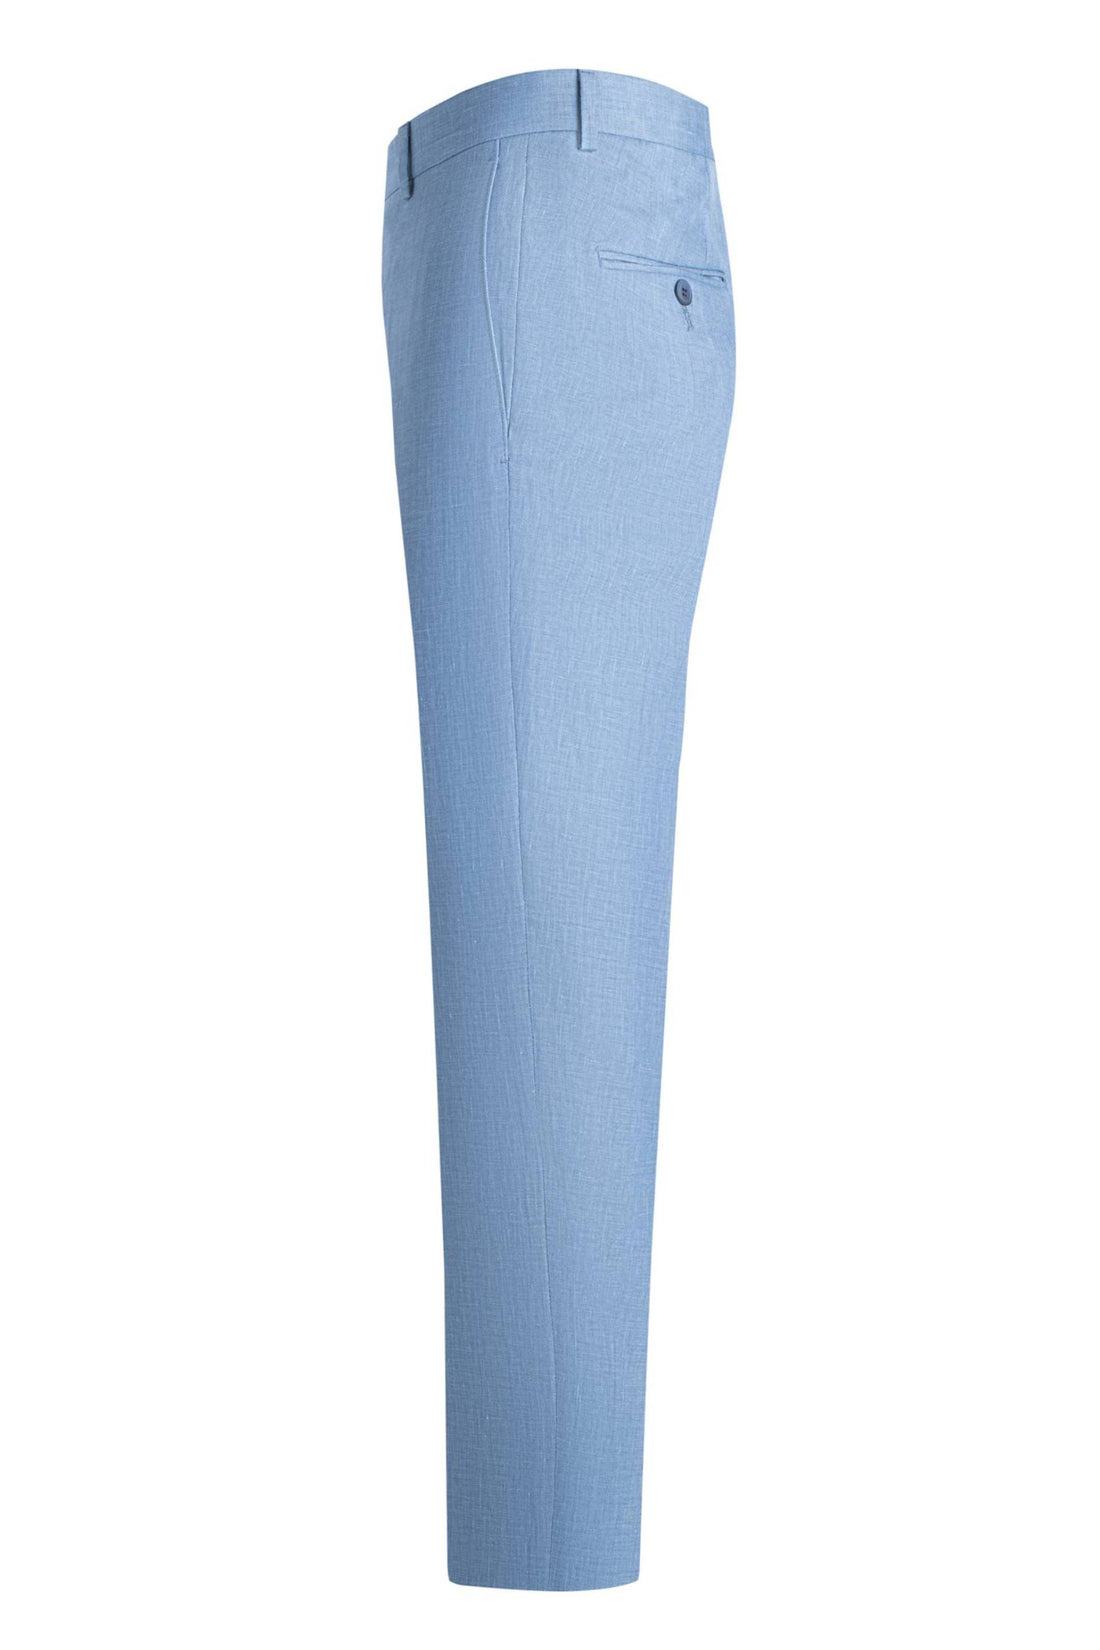 Samuelson Blue Linen Blend Sharkskin Trousers side